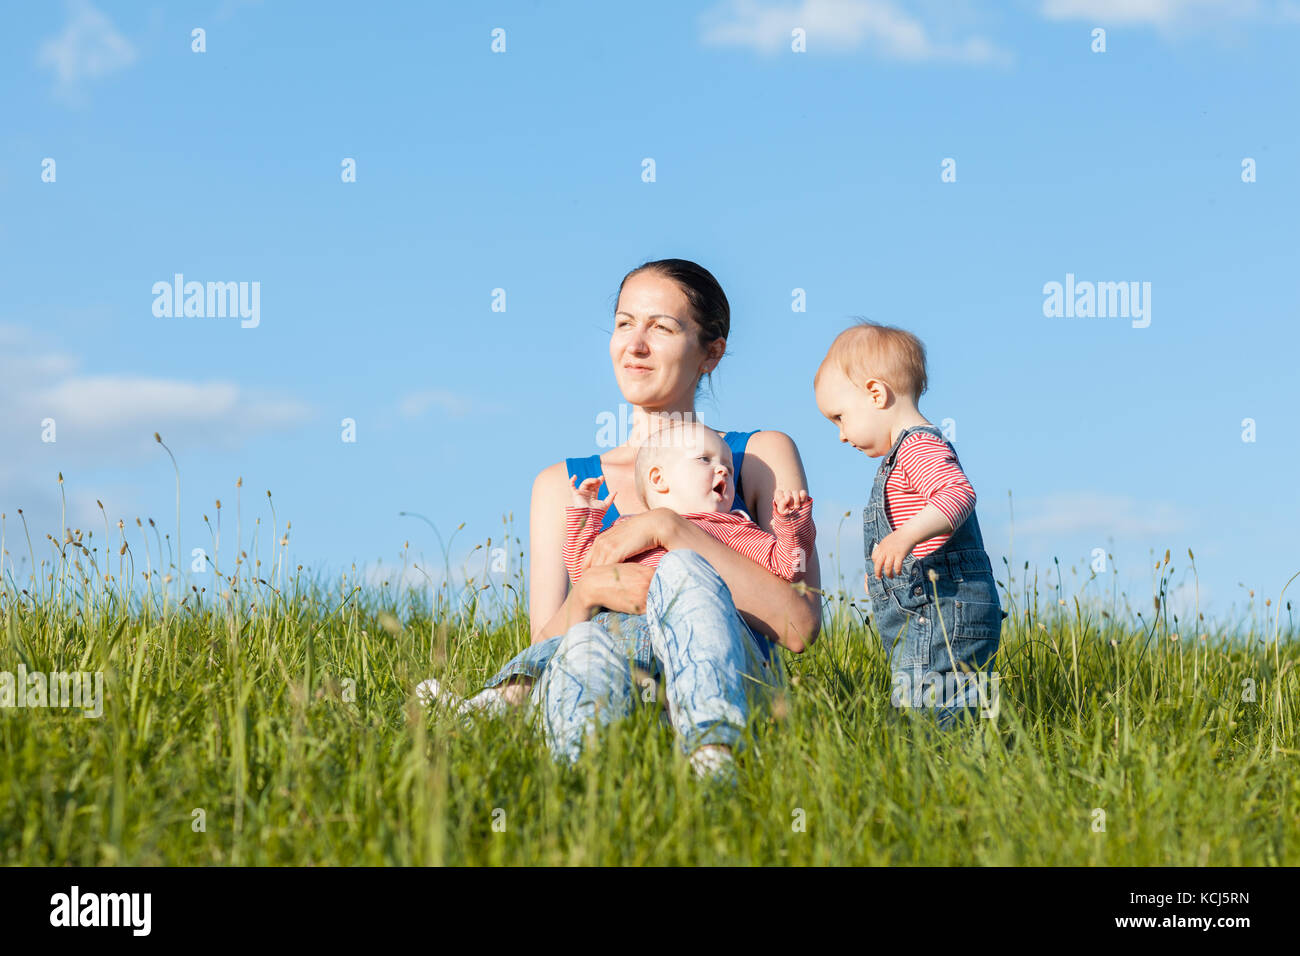 Portrait d'une mère de deux enfants. ils jouent dans l'herbe verte Banque D'Images